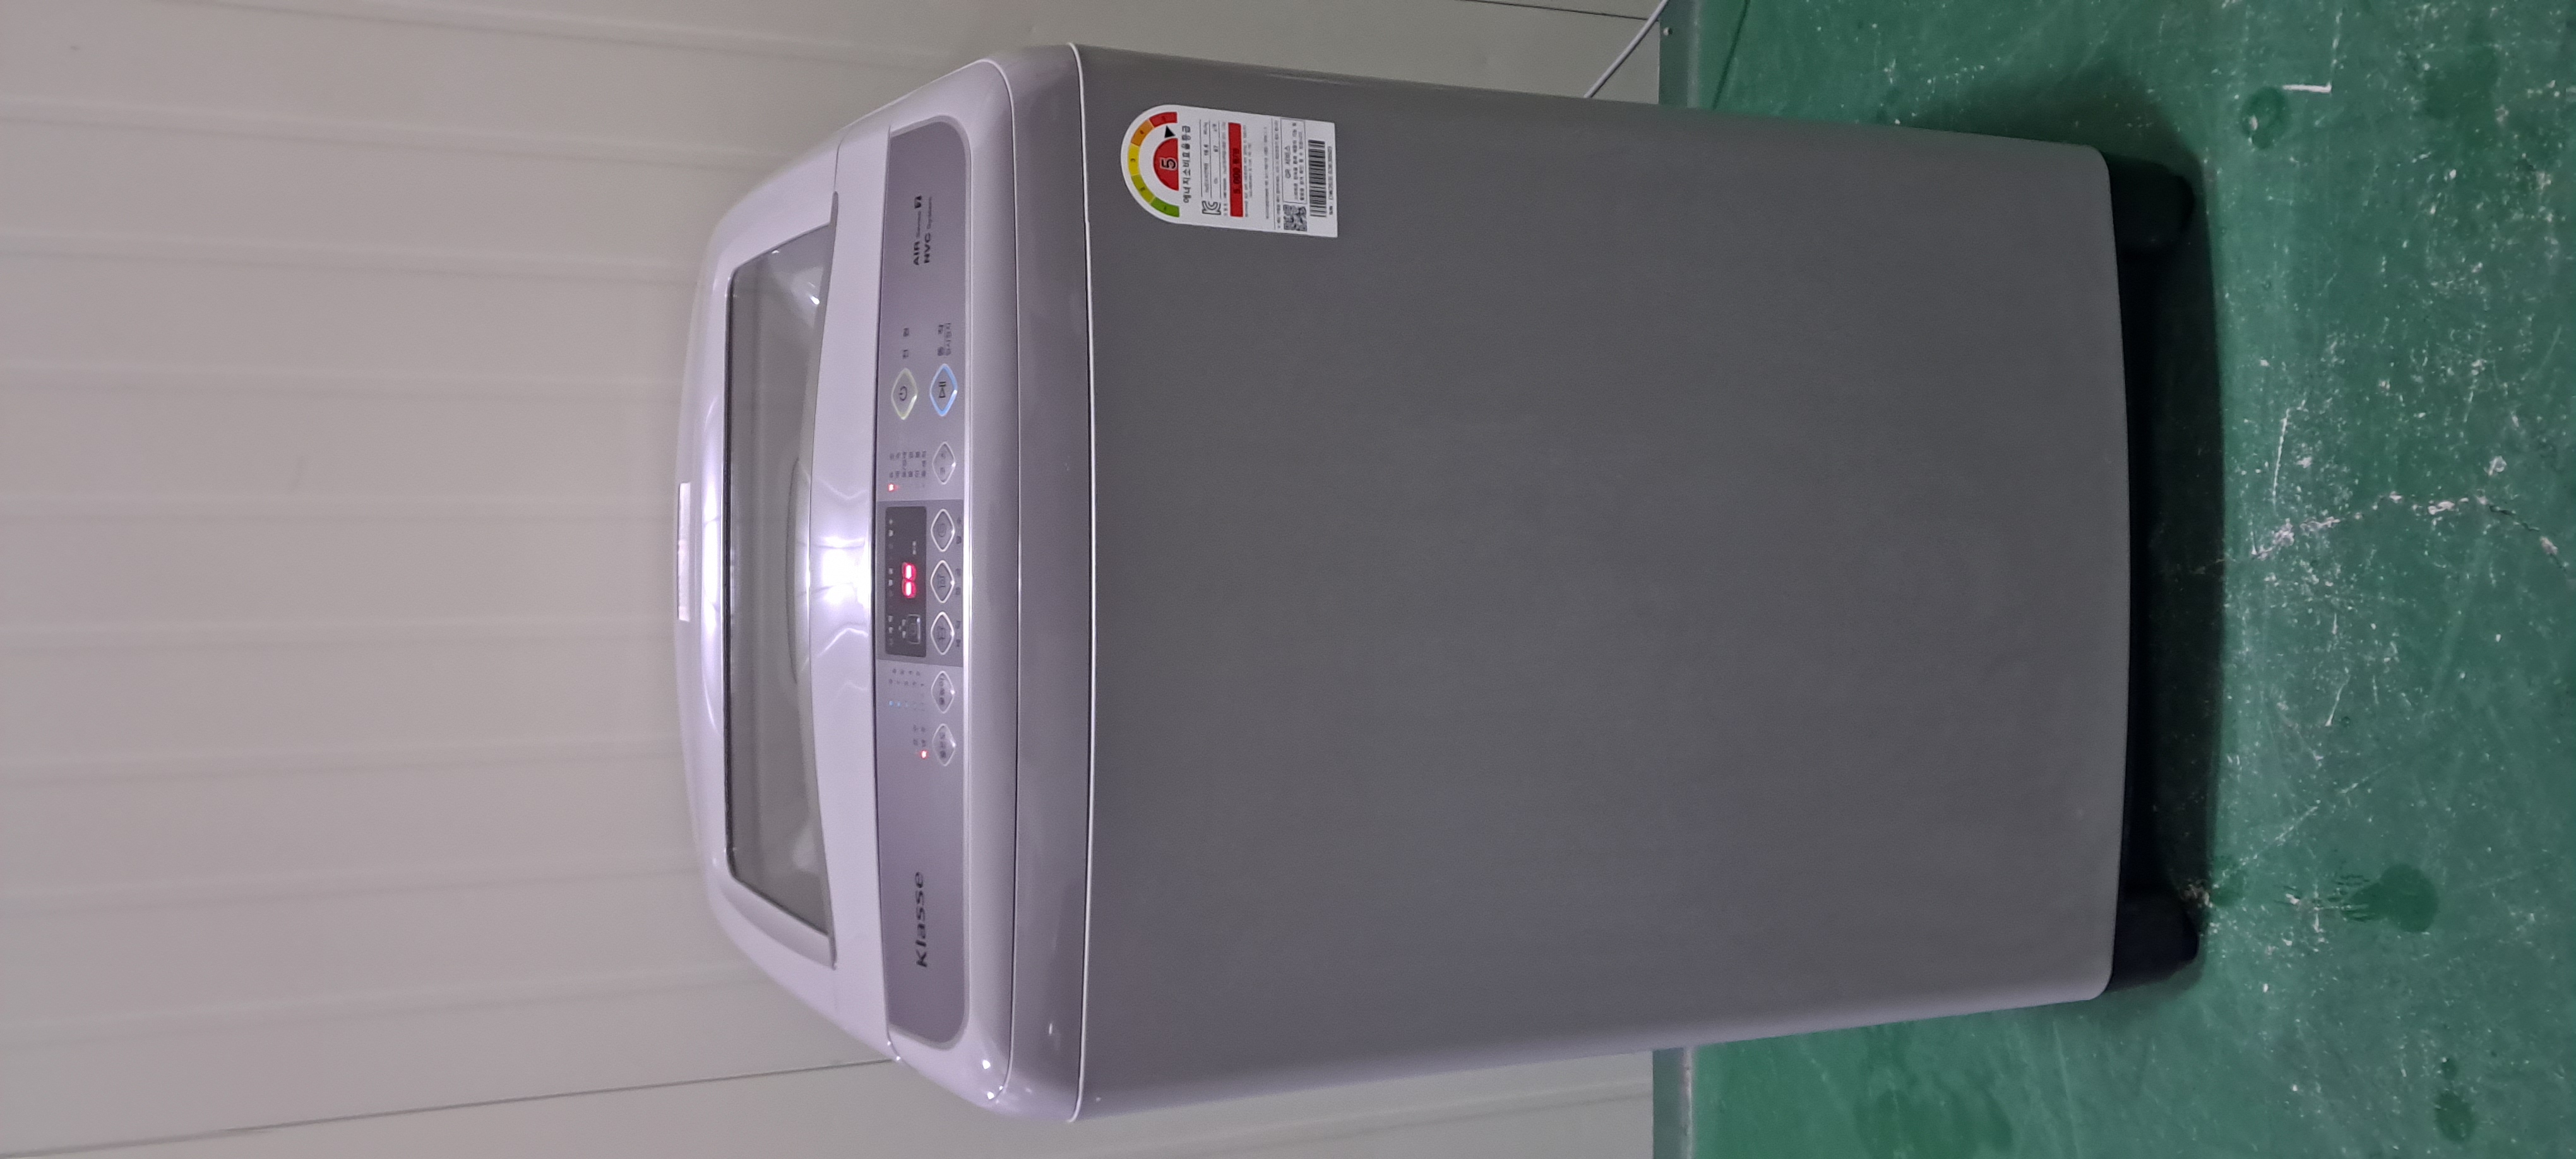 2487 대우클라쎄 15KG 통돌이세탁기(메탈그레이)